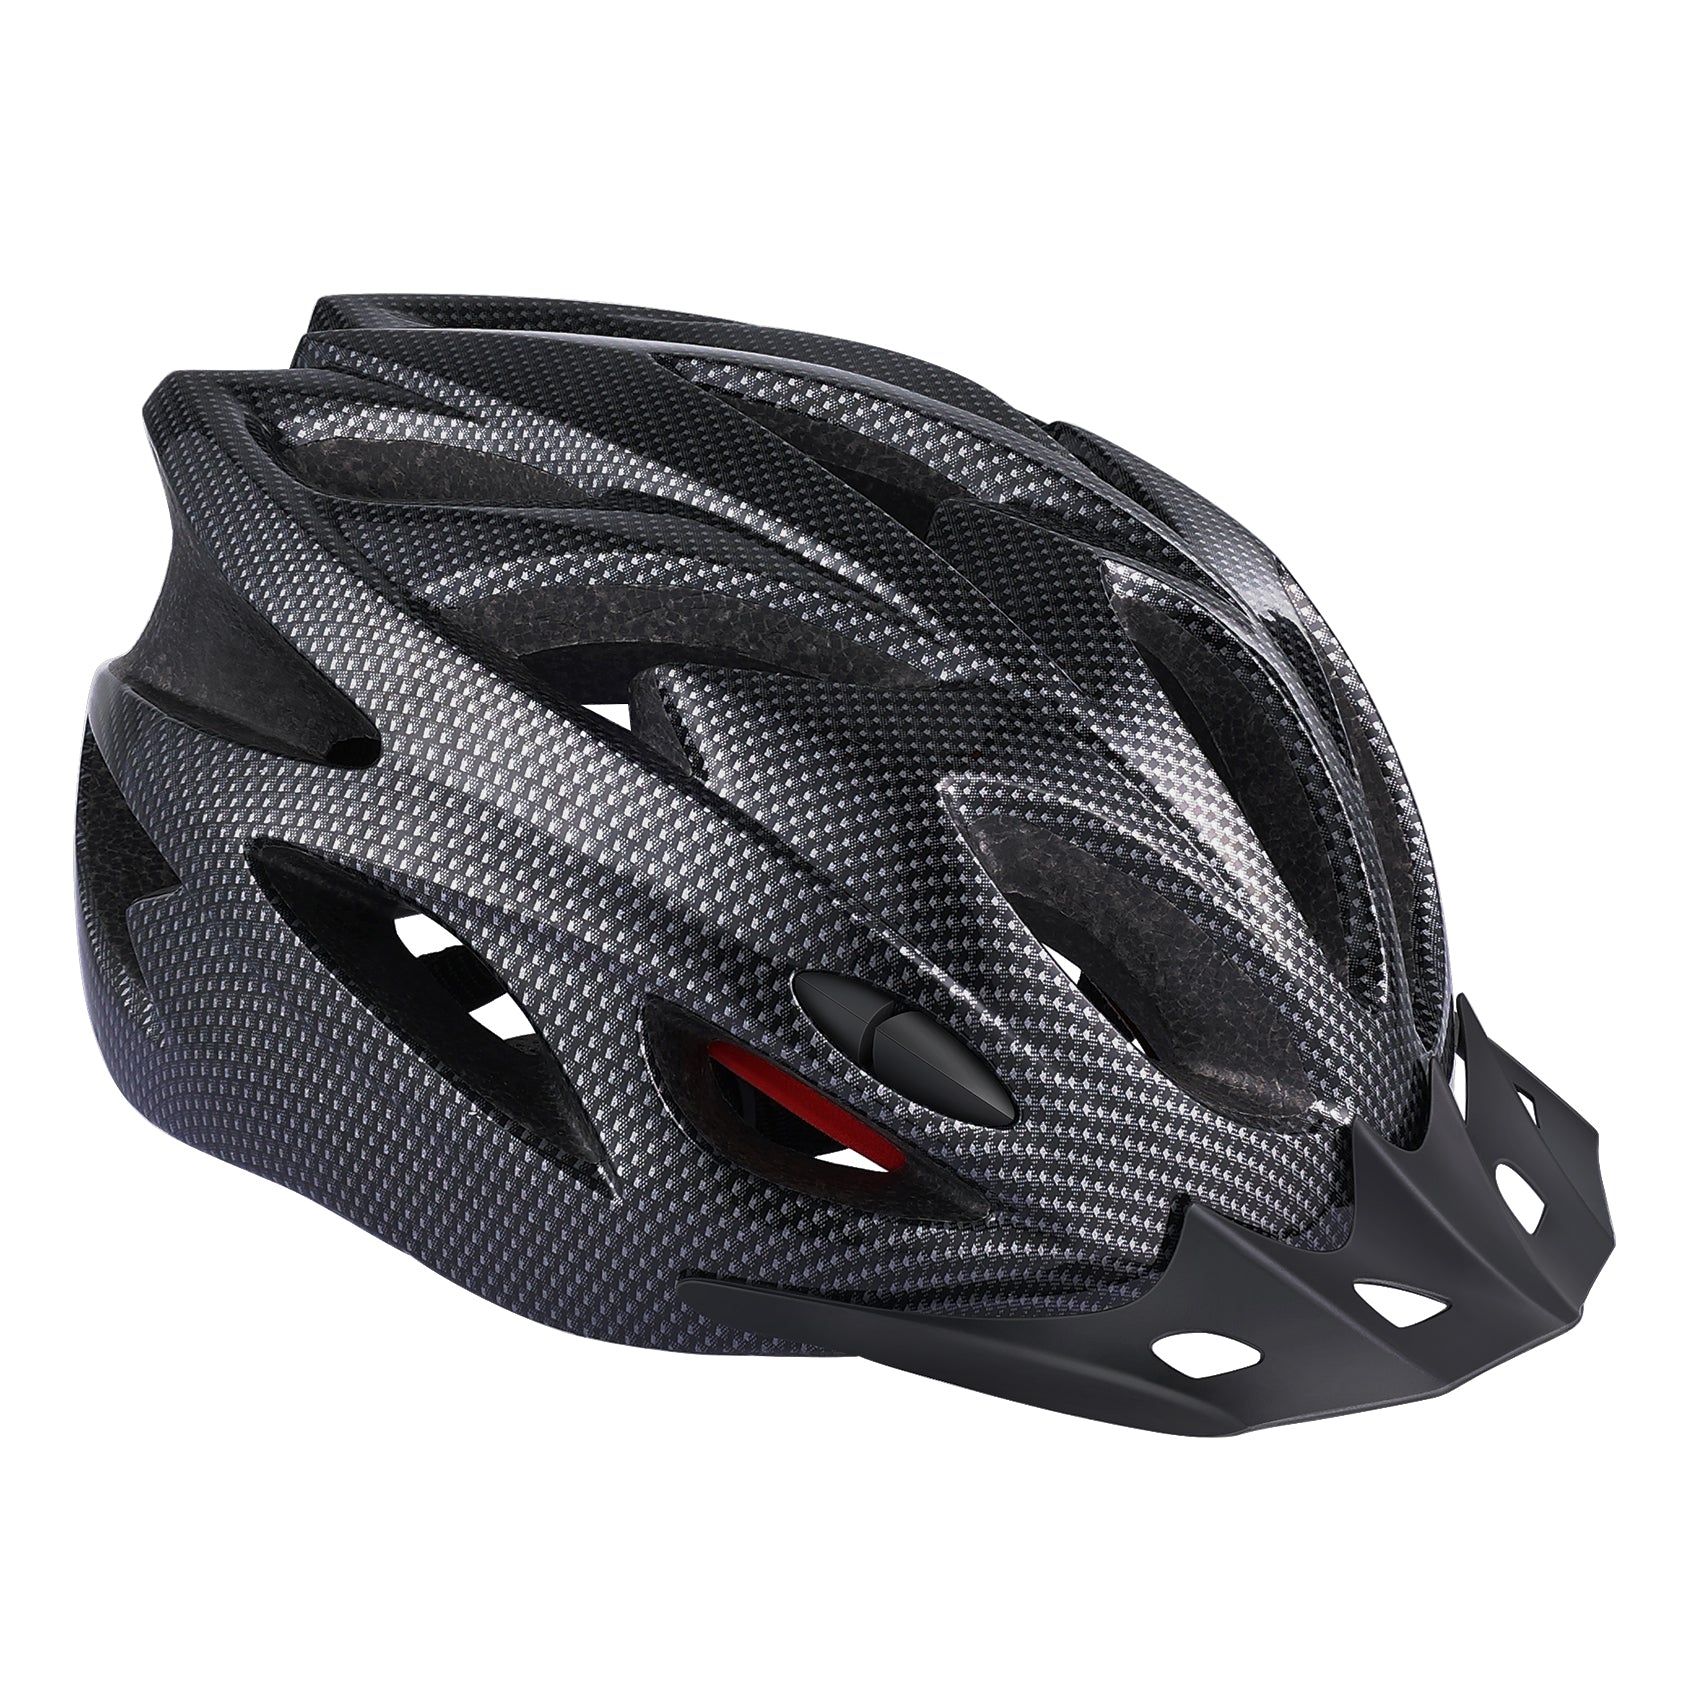  Zacro Adult Bike Helmet Lightweight for Men Women